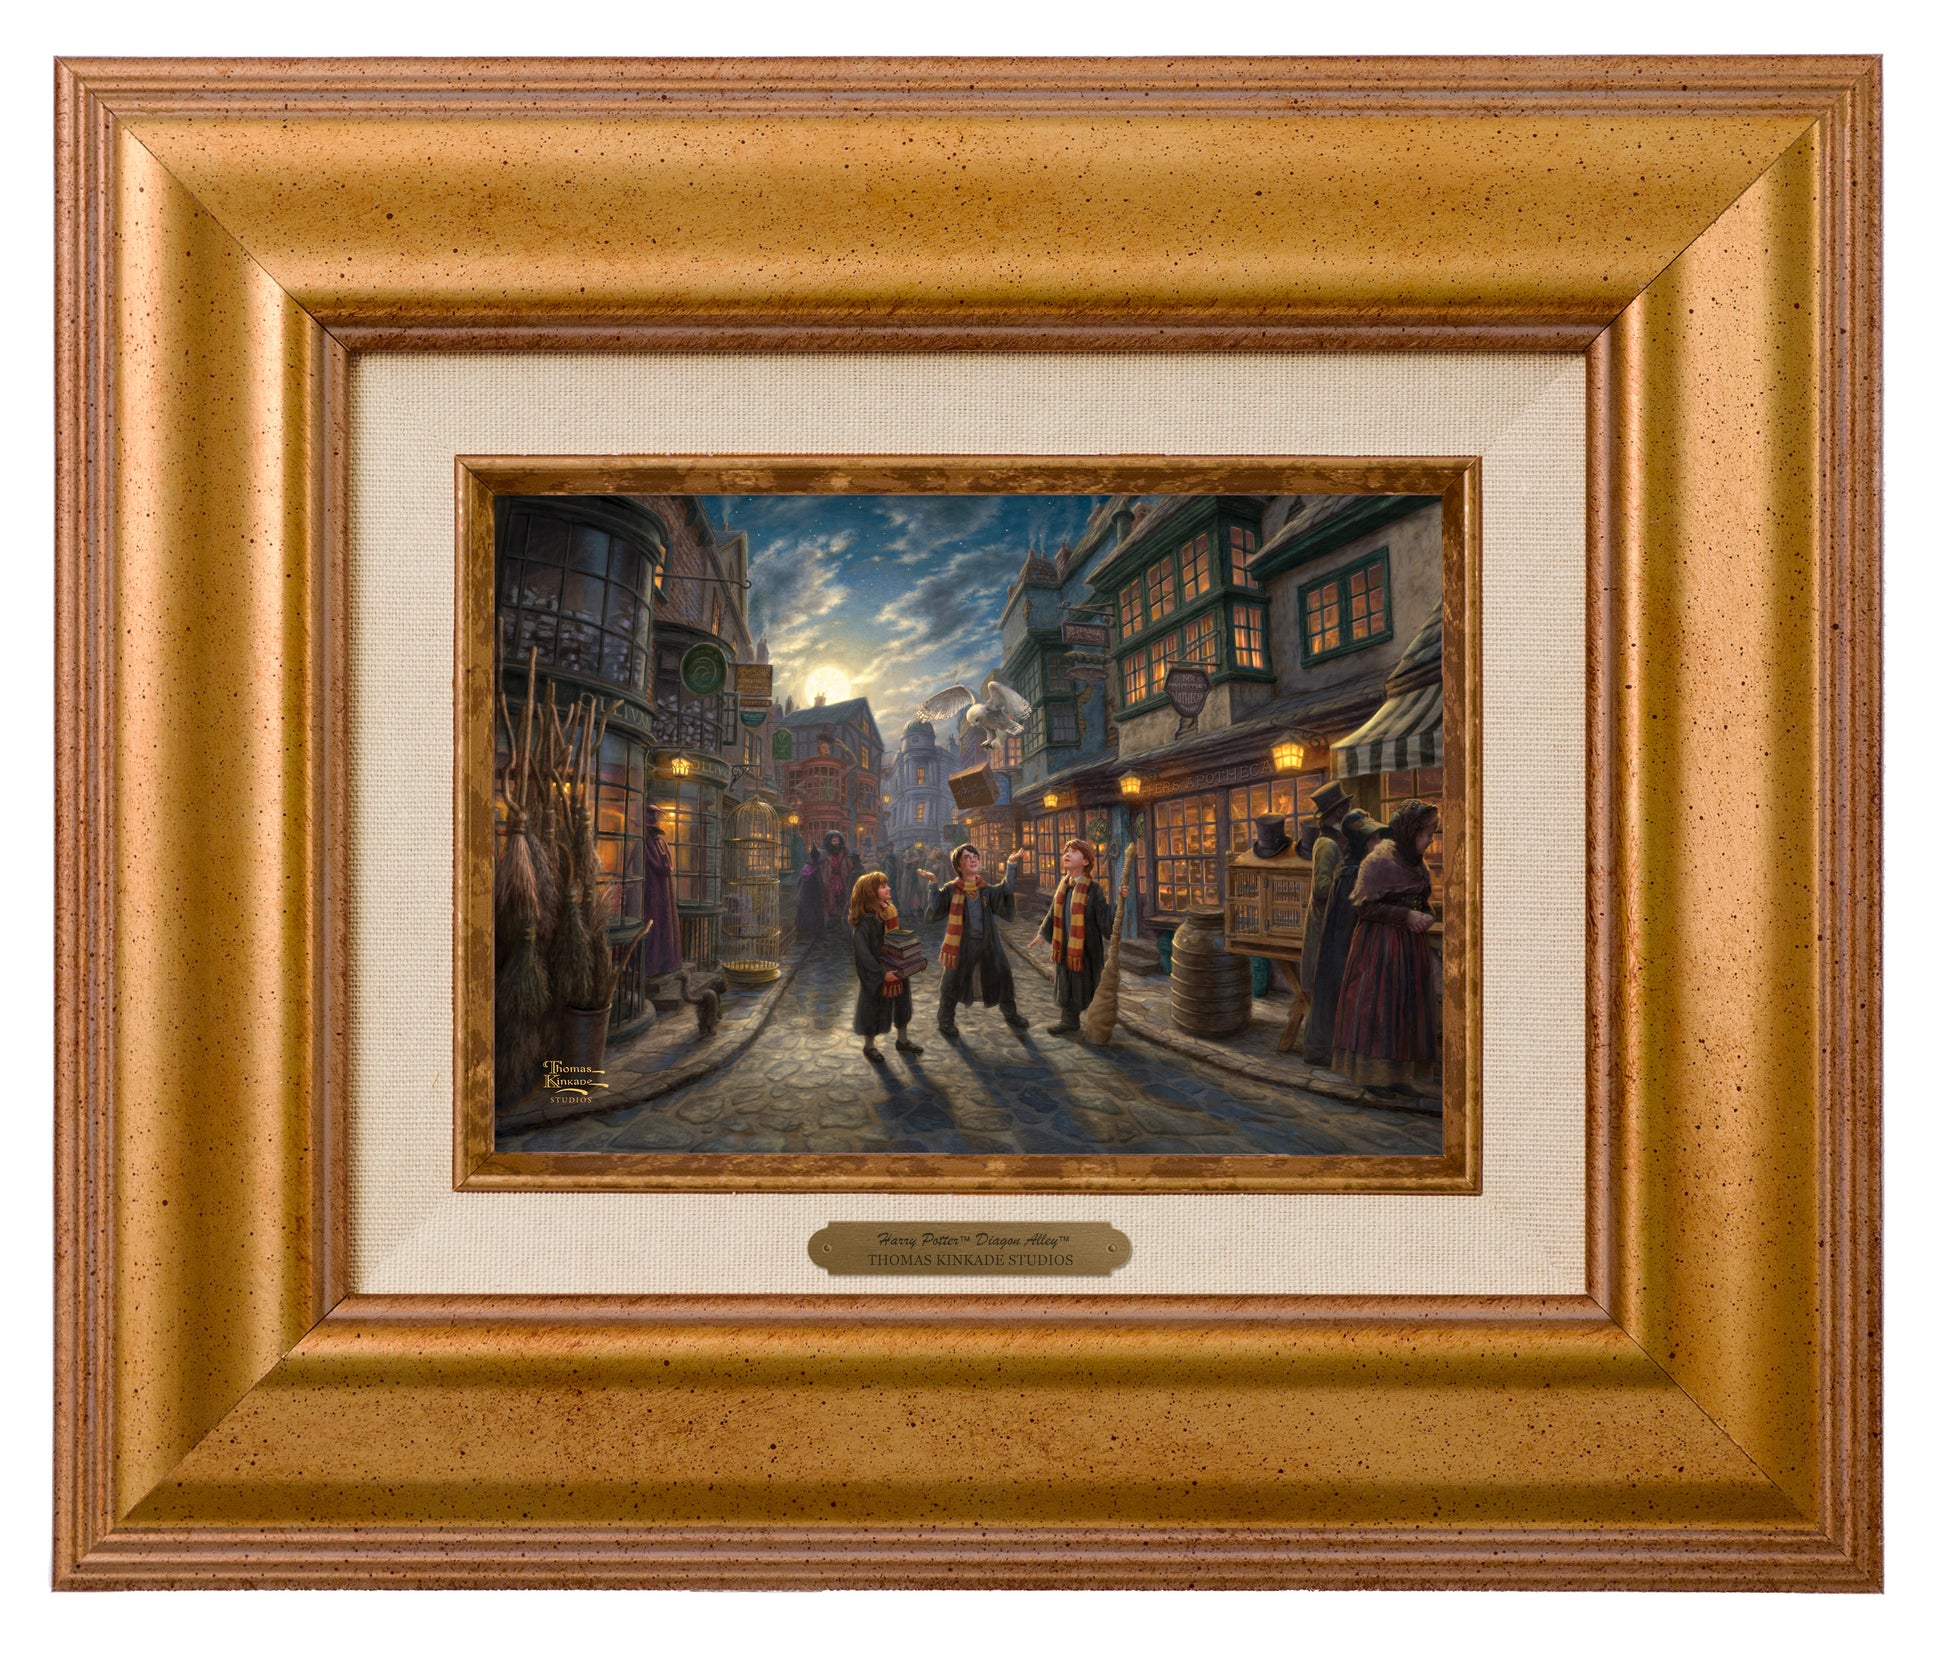 165535 BRW Harry Potter Diagon Alley 5X7 - Golden Sunset Frame.jpg